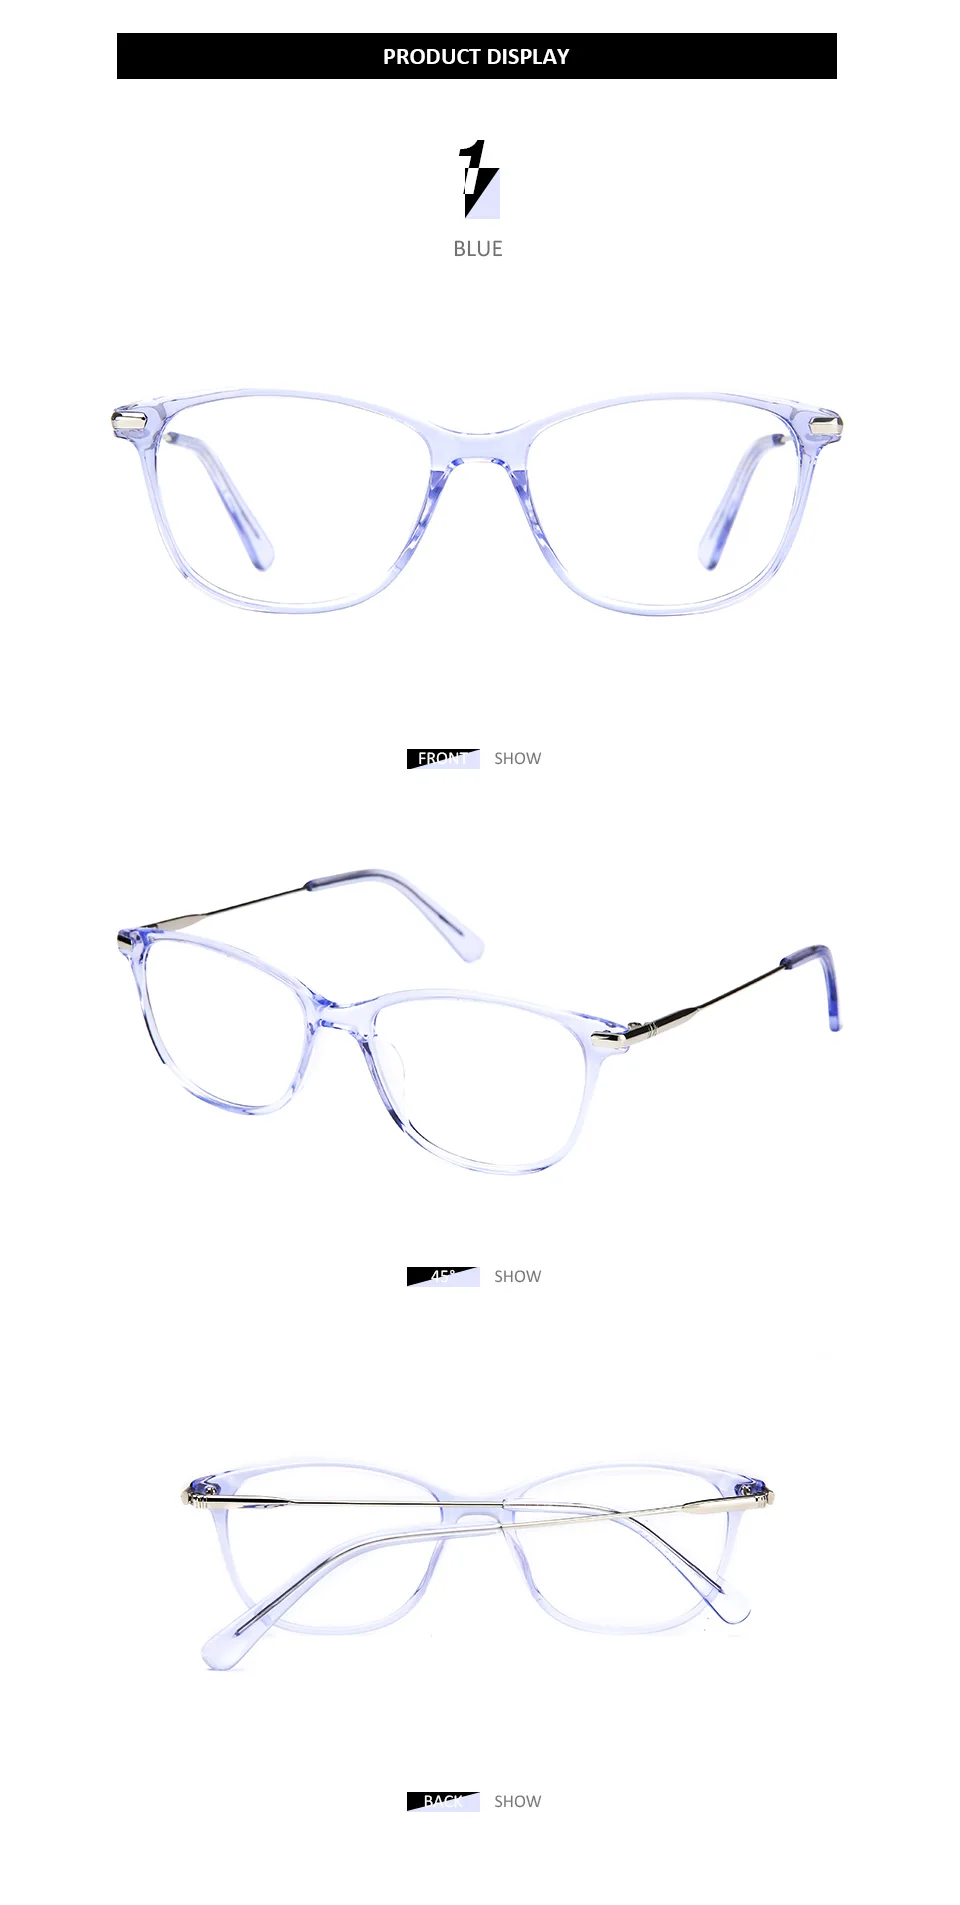 BLUEMOKY очки по рецепту, оправа для женщин, оптические очки для близорукости, оправа для очков, женские прозрачные линзы, прямоугольные поддельные очки